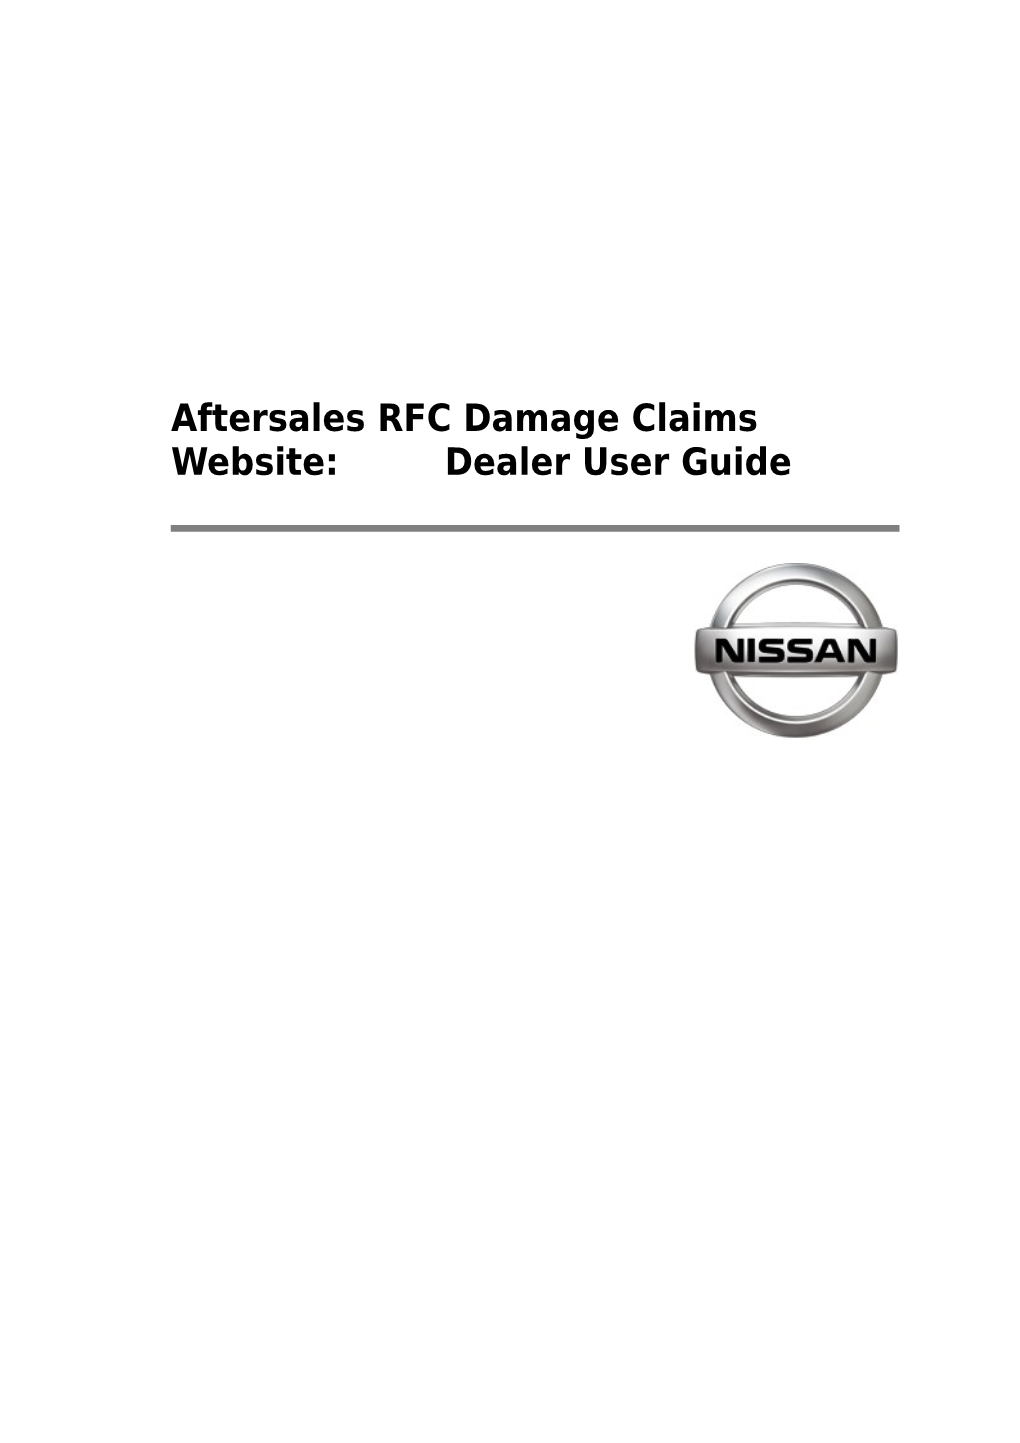 Aftersales RFC Damage Claims Website: Dealer User Guide